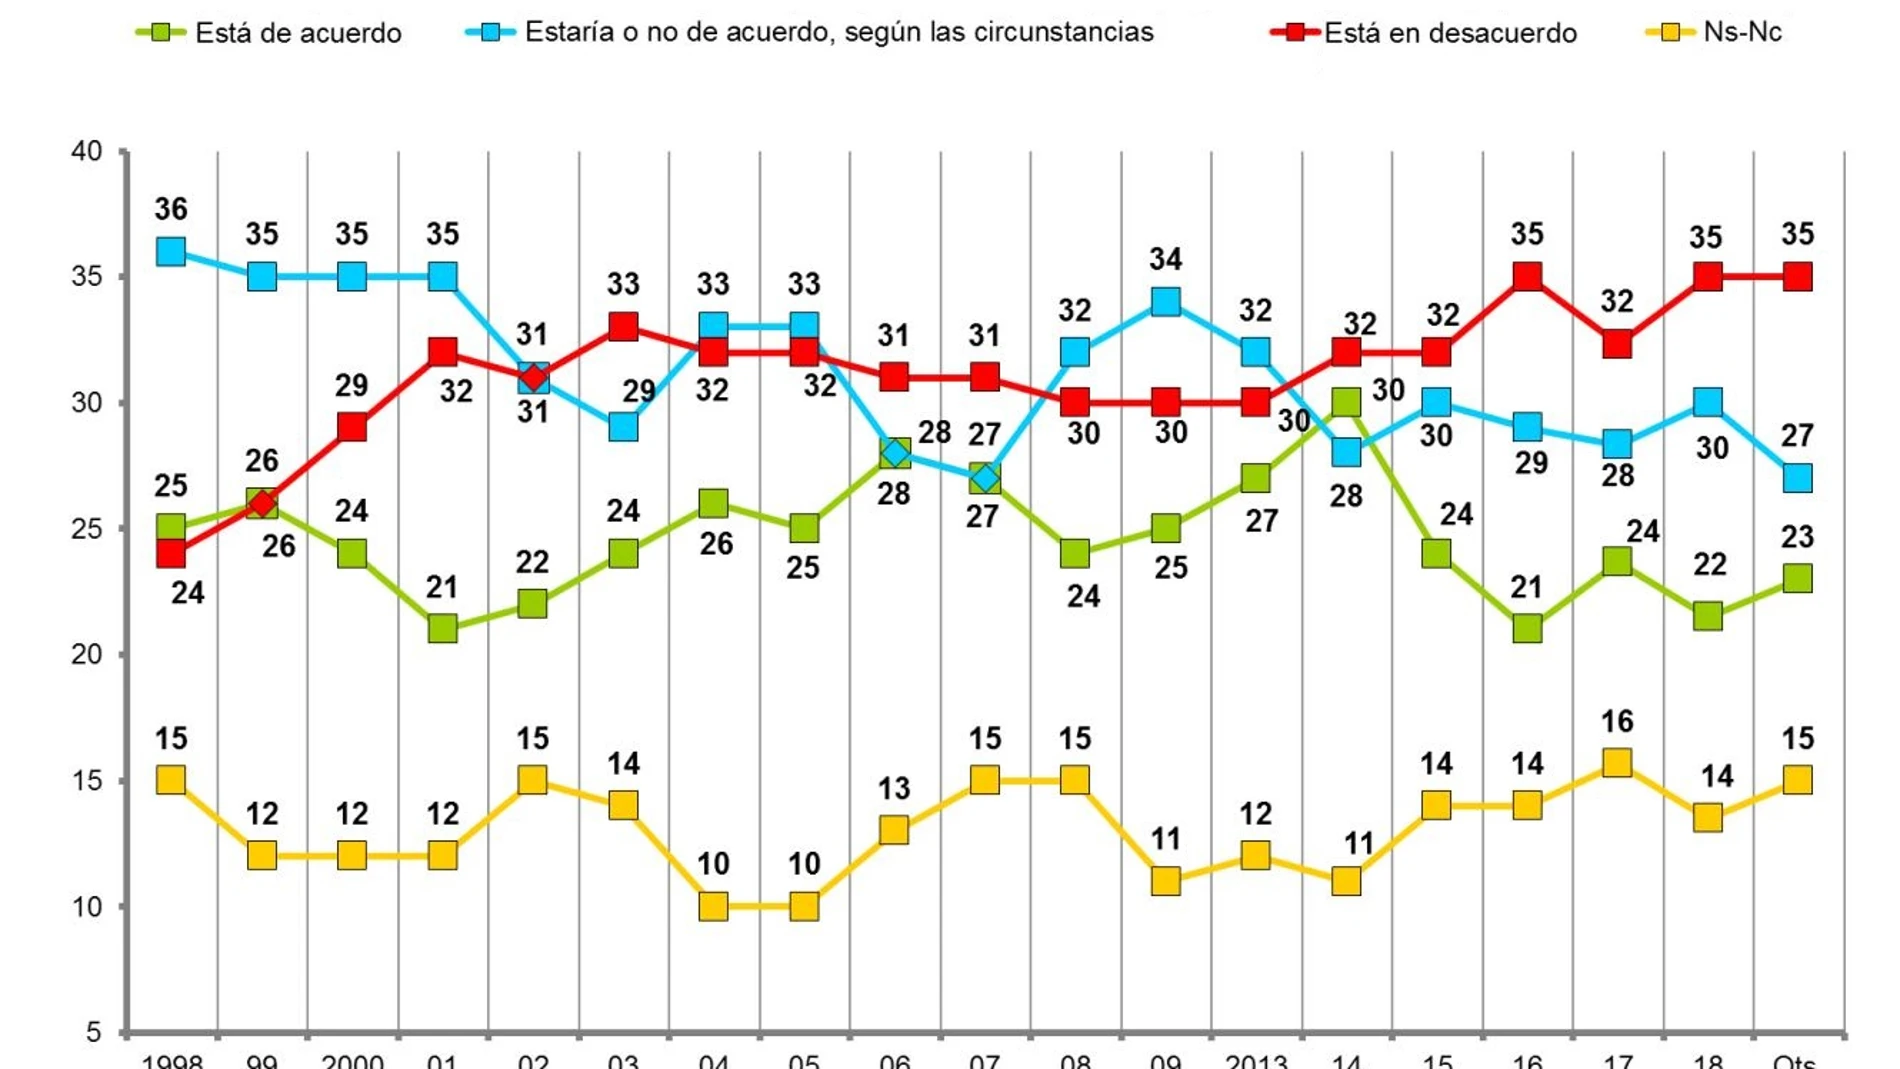 El 35% de los vascos se muestran contrarios a la independencia, su nivel histórico más alto